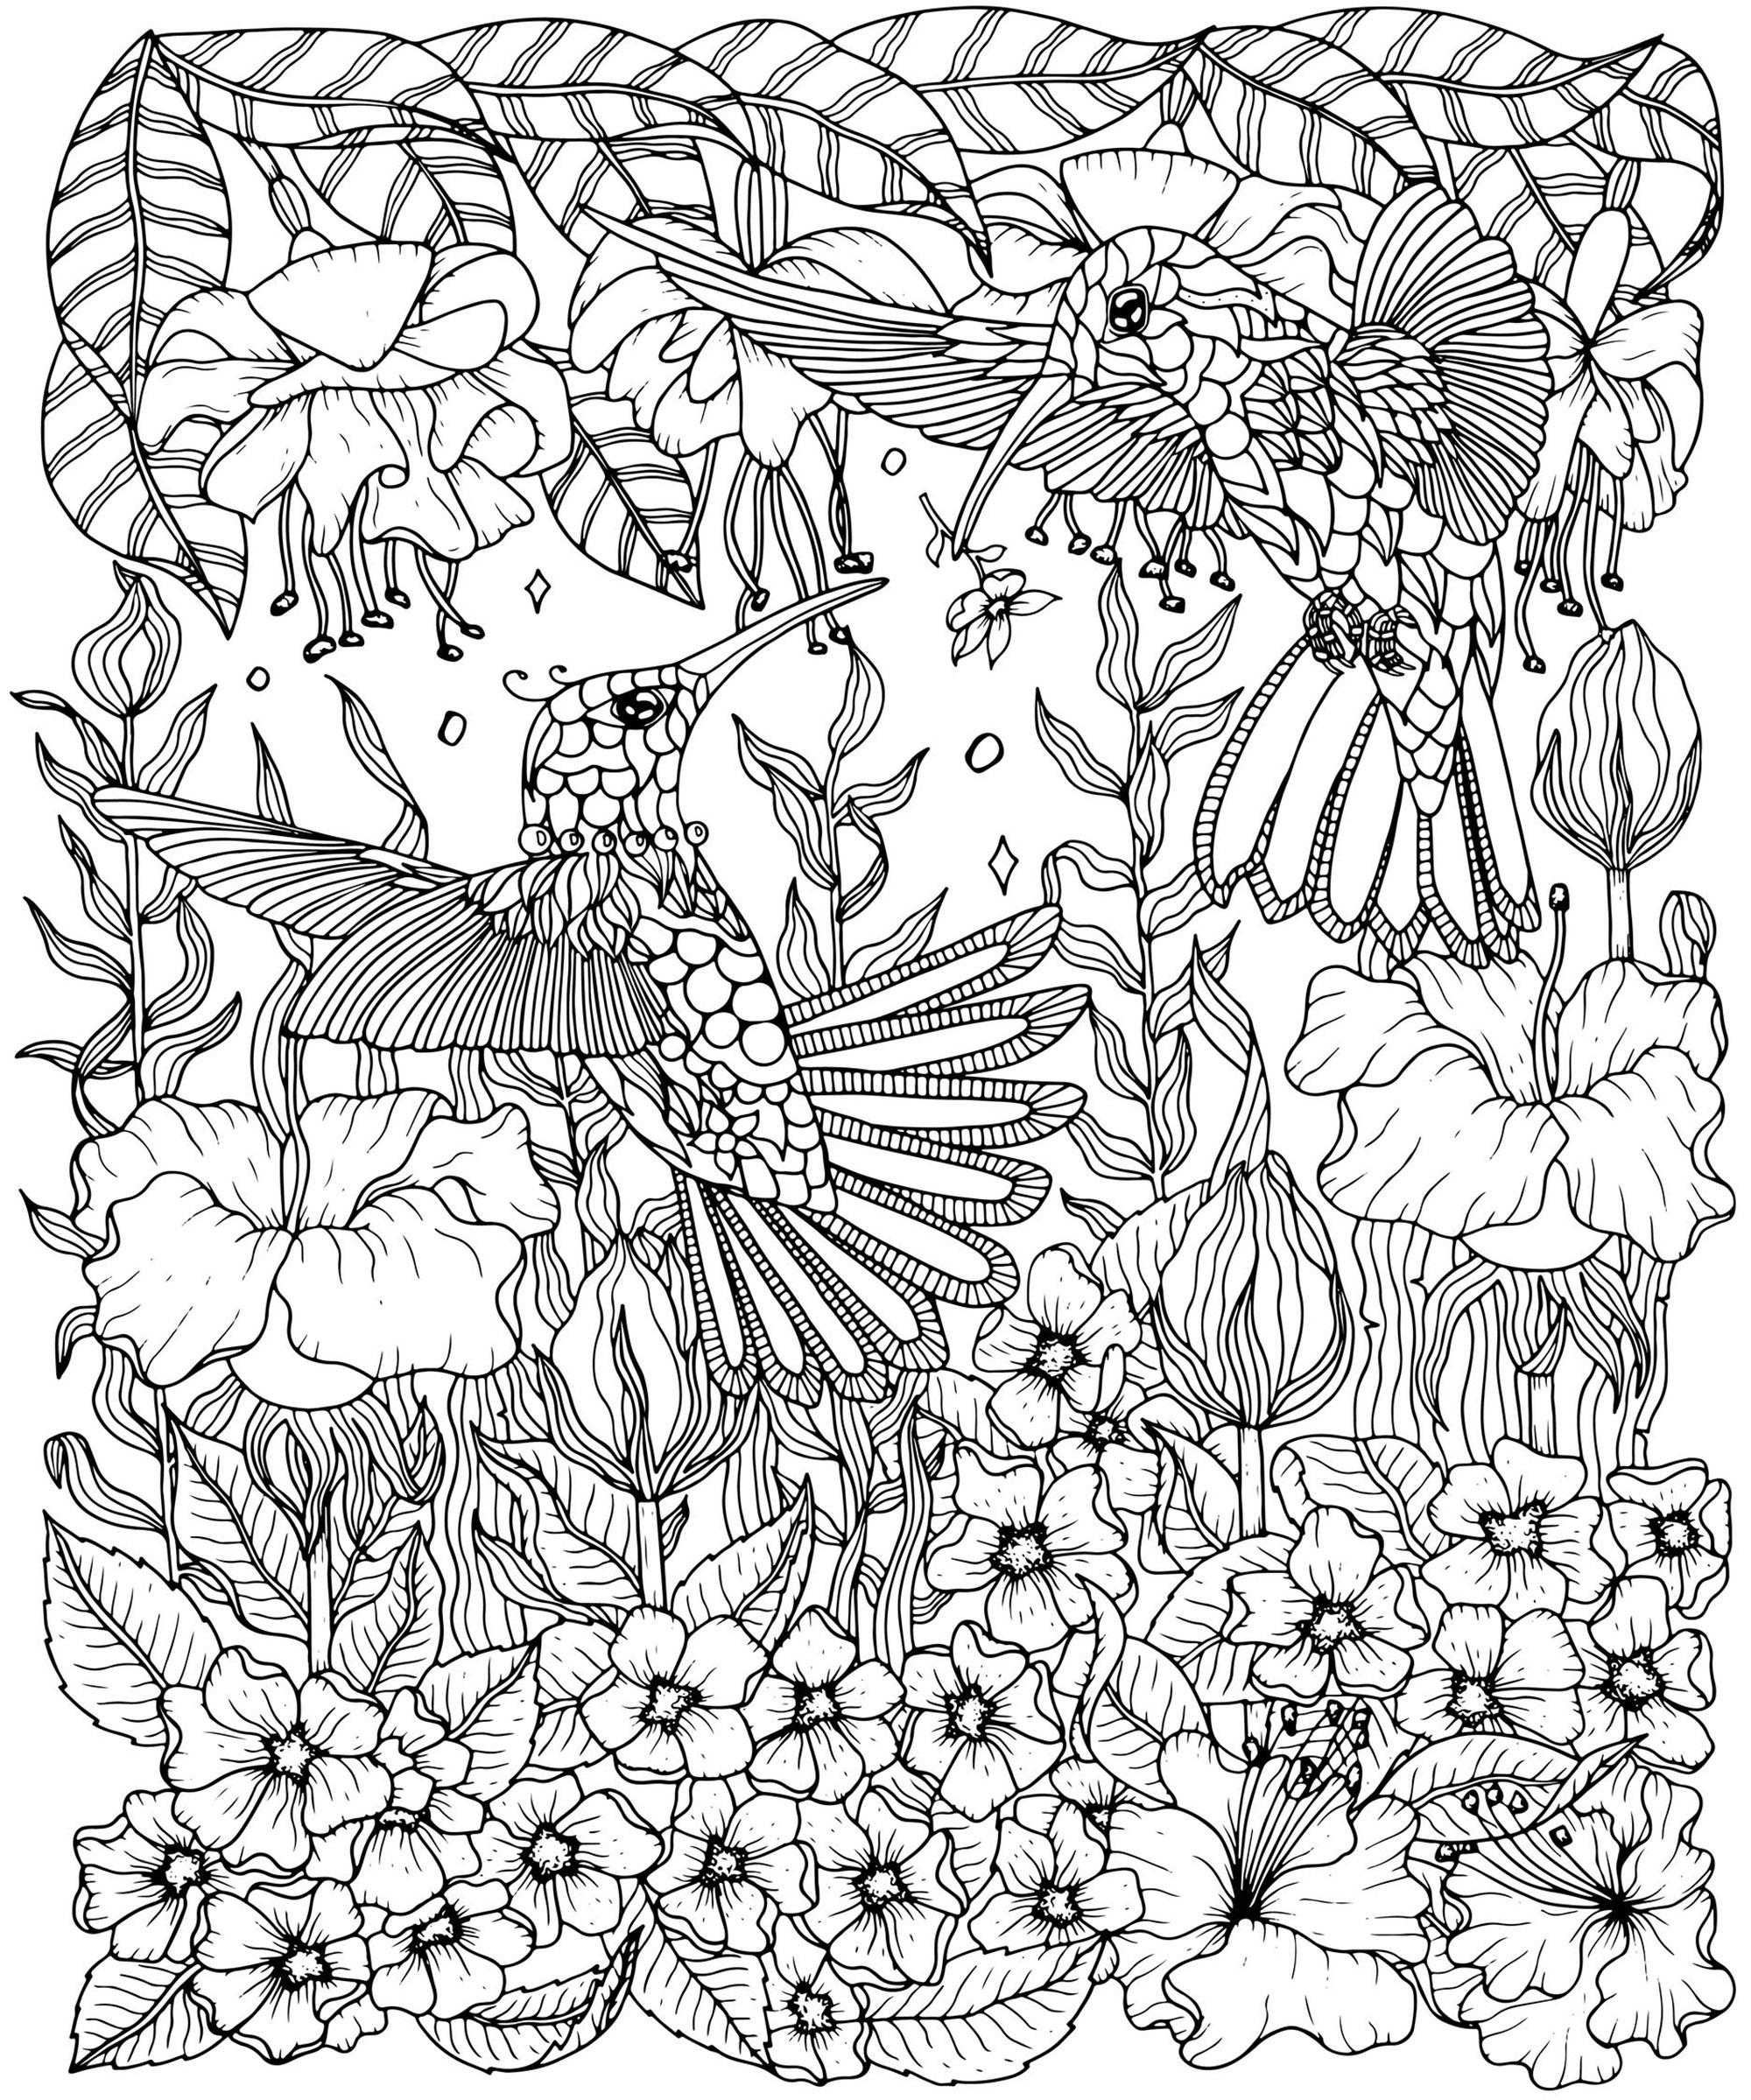 Colorea estos hermosos Colibríes con complejos y variados tipos de flores, Artista : Svetlana Malysheva   Origen : 123rf